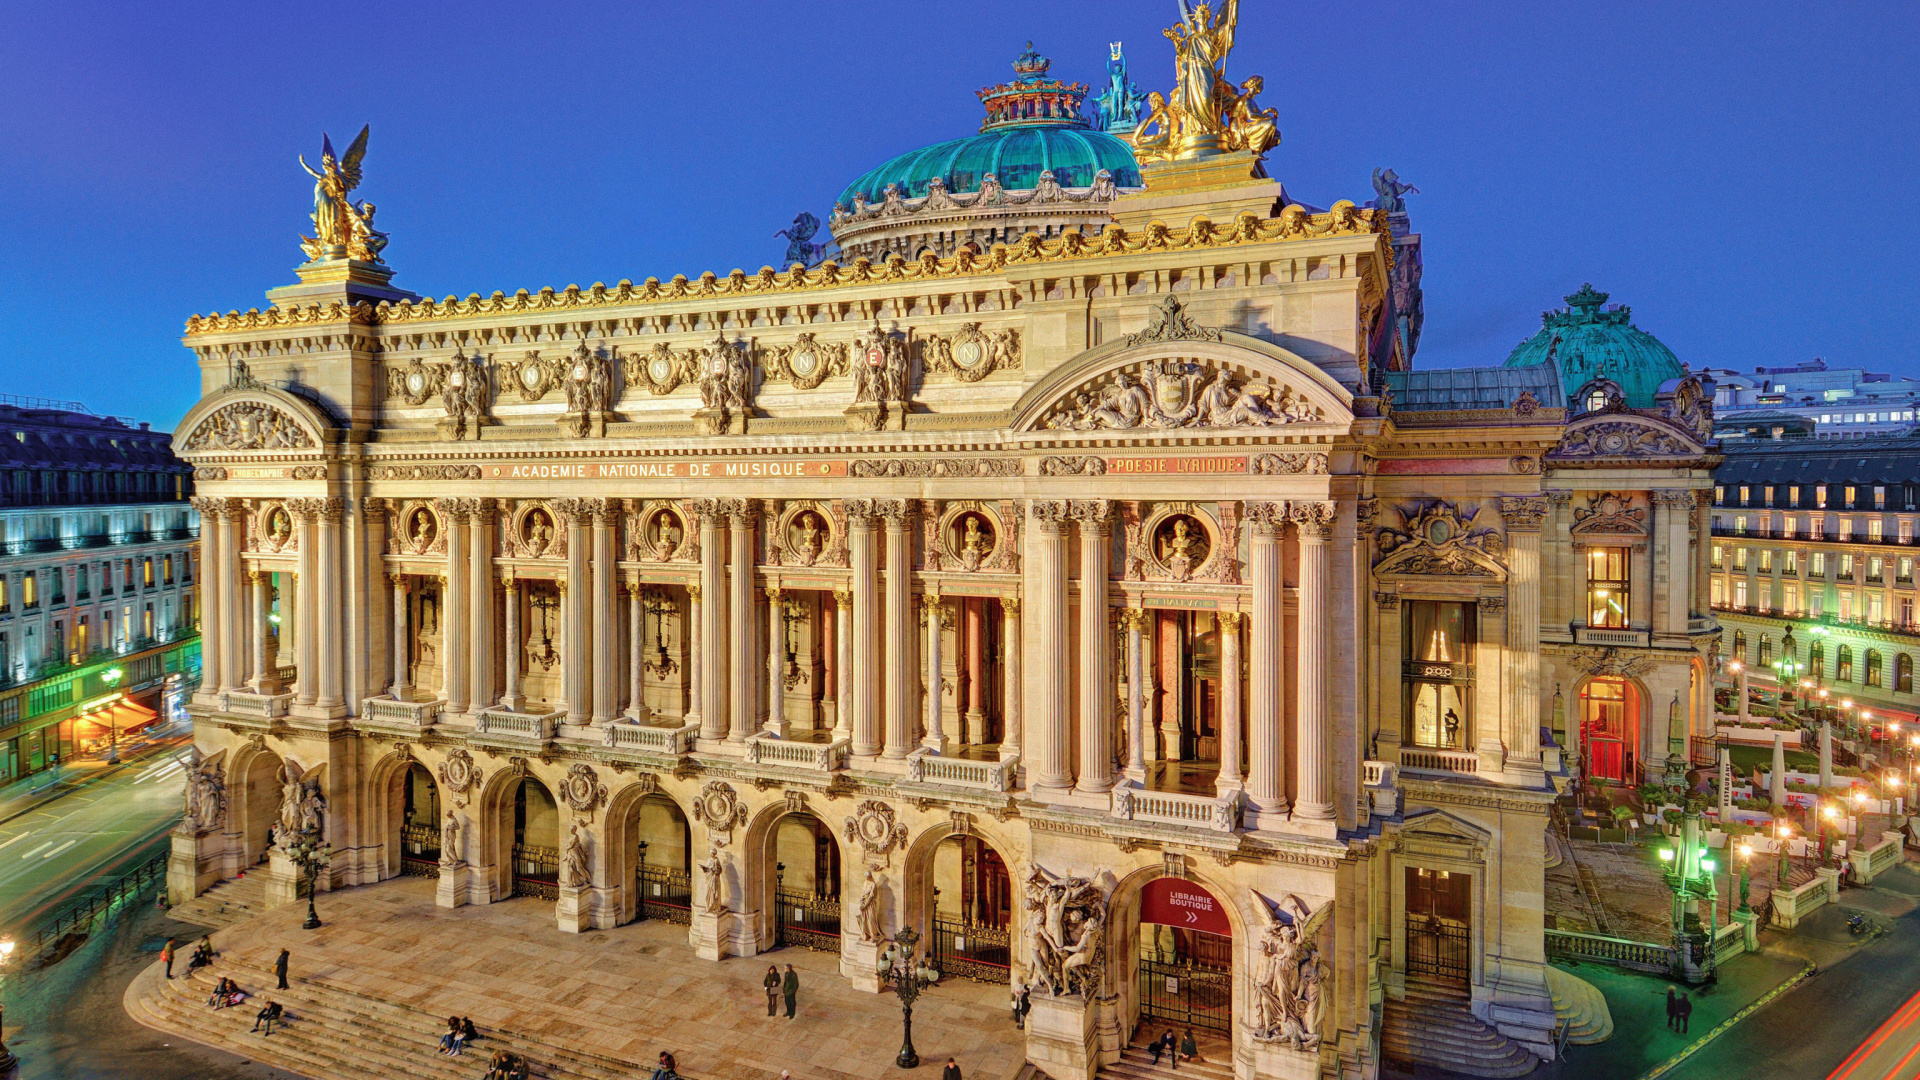 Palais Garnier Opera Paris wallpaper 1920x1080